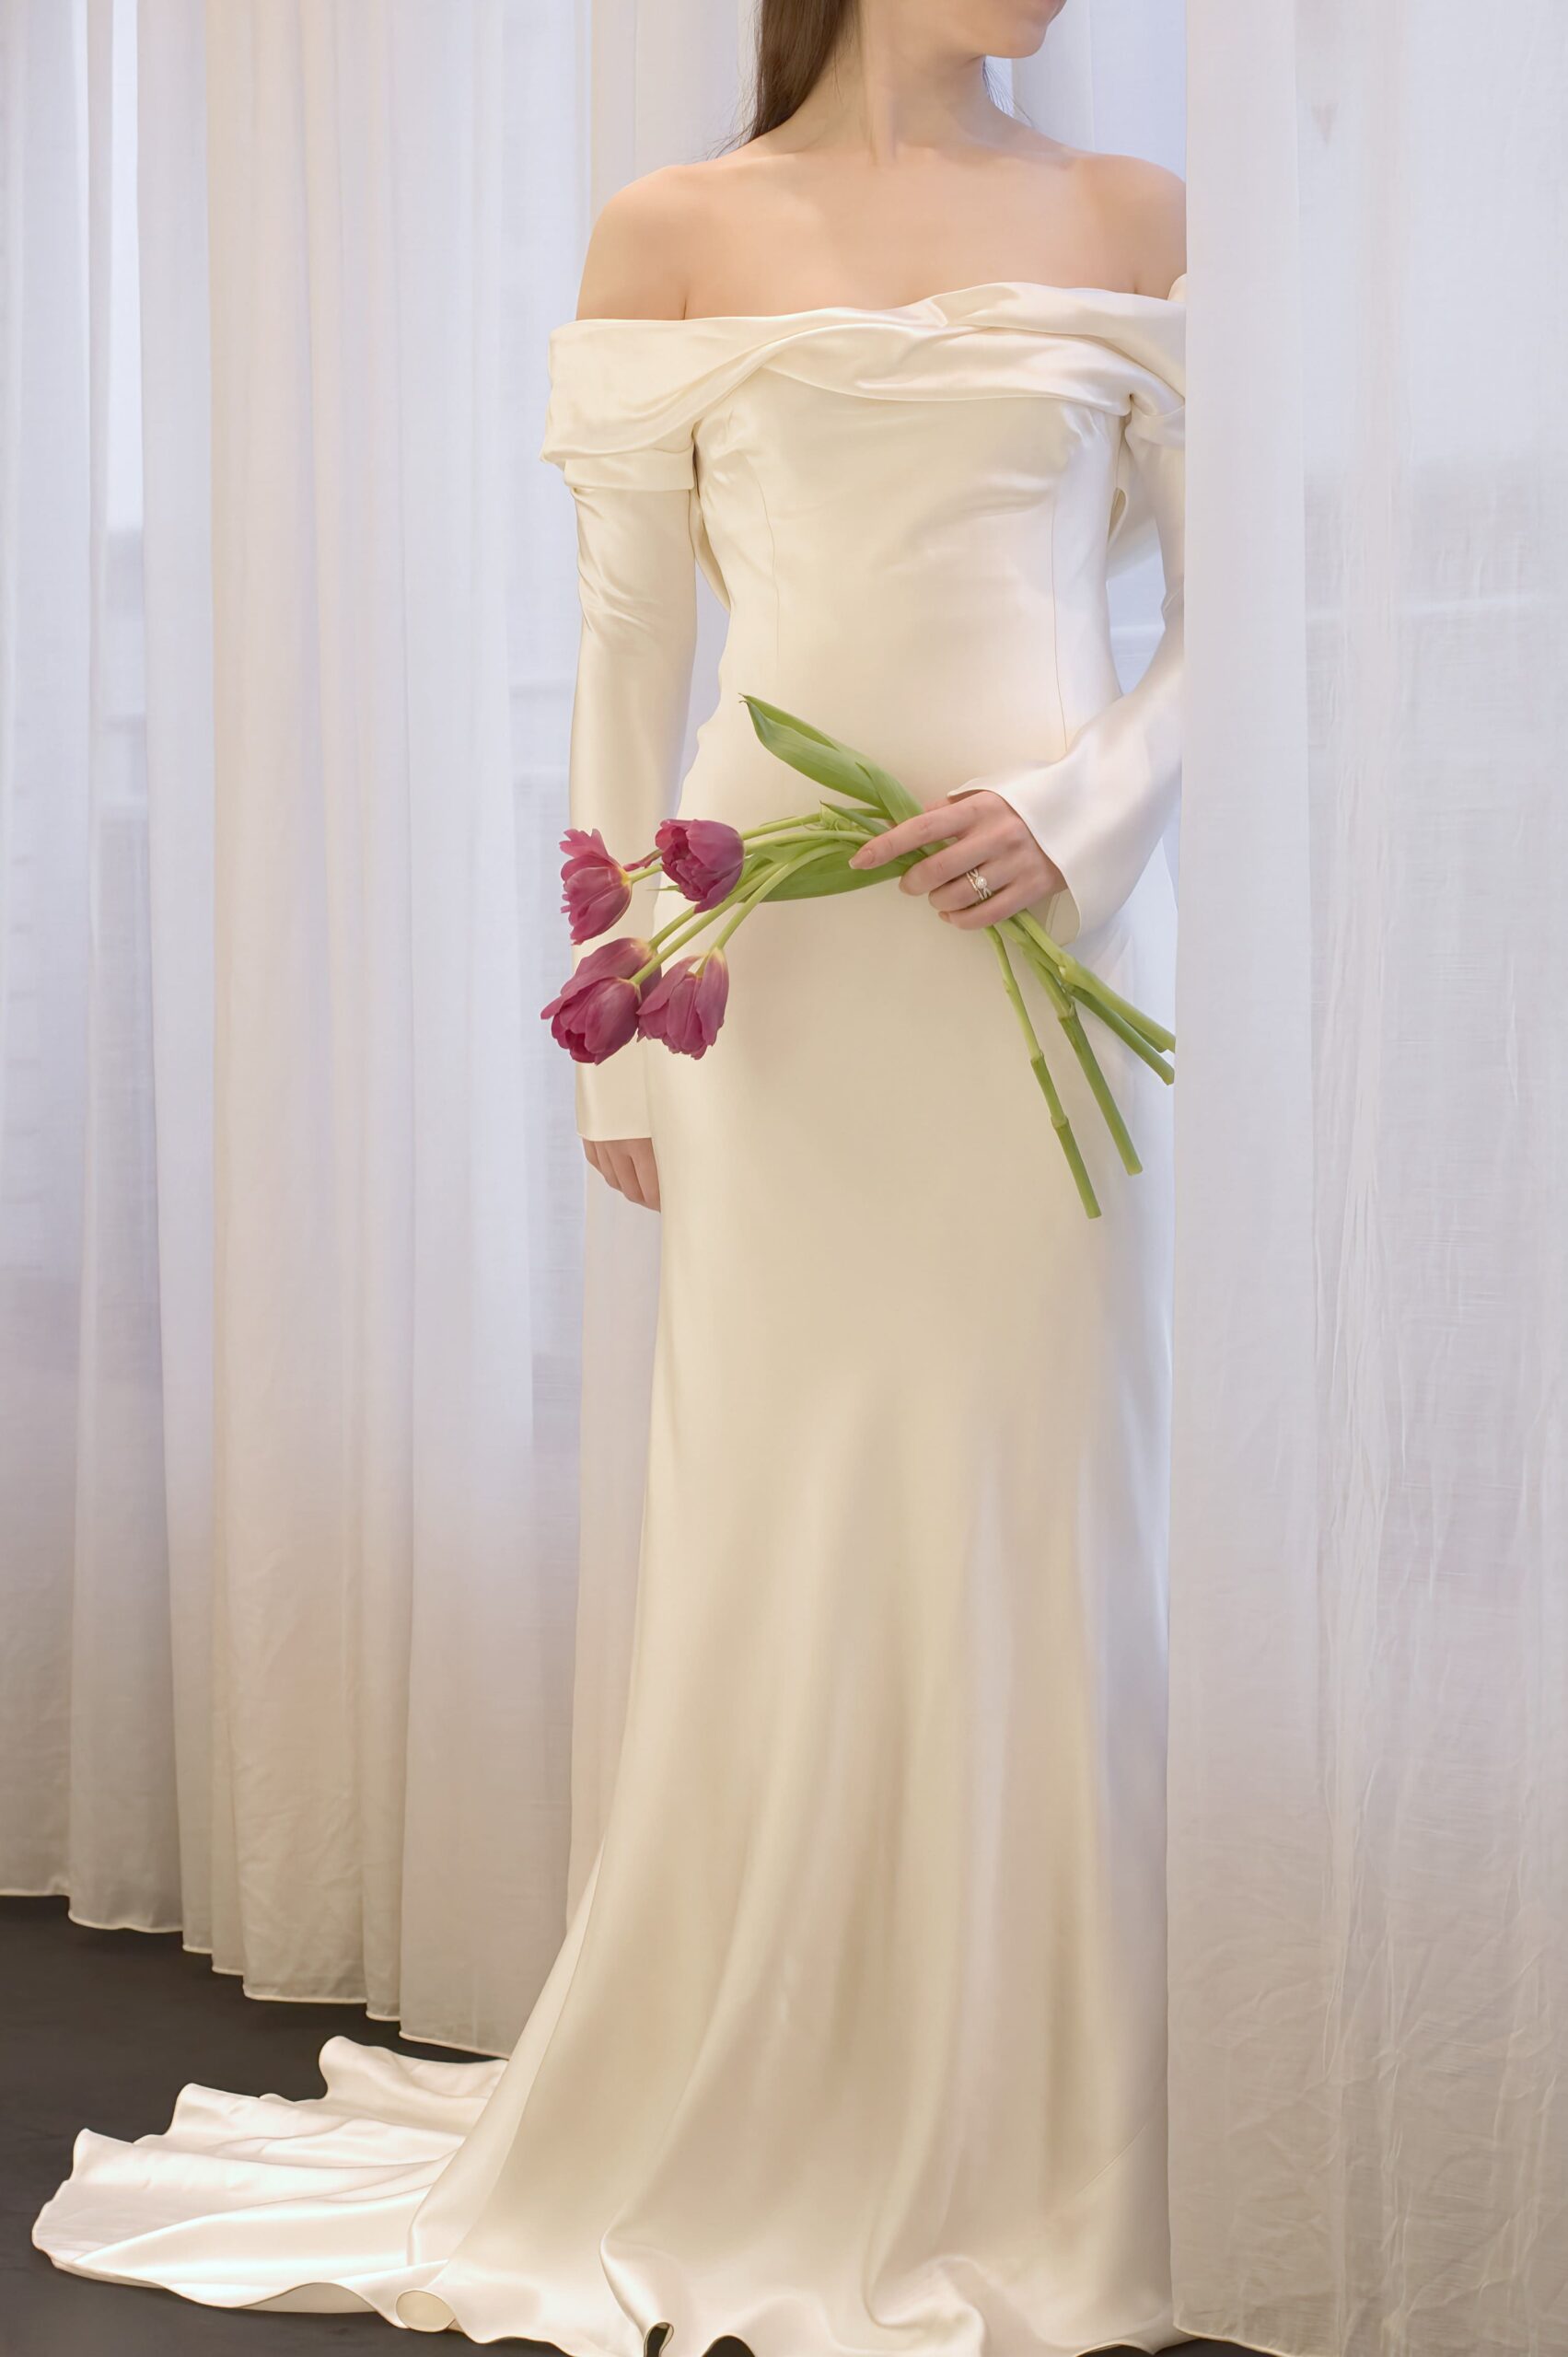 春の結婚式におすすめのウェディングドレスは、シルクの艶めきが美しい細身のシルエットで、オフショルダーがデコルテを華奢にみせるロングスリーブのデザインです